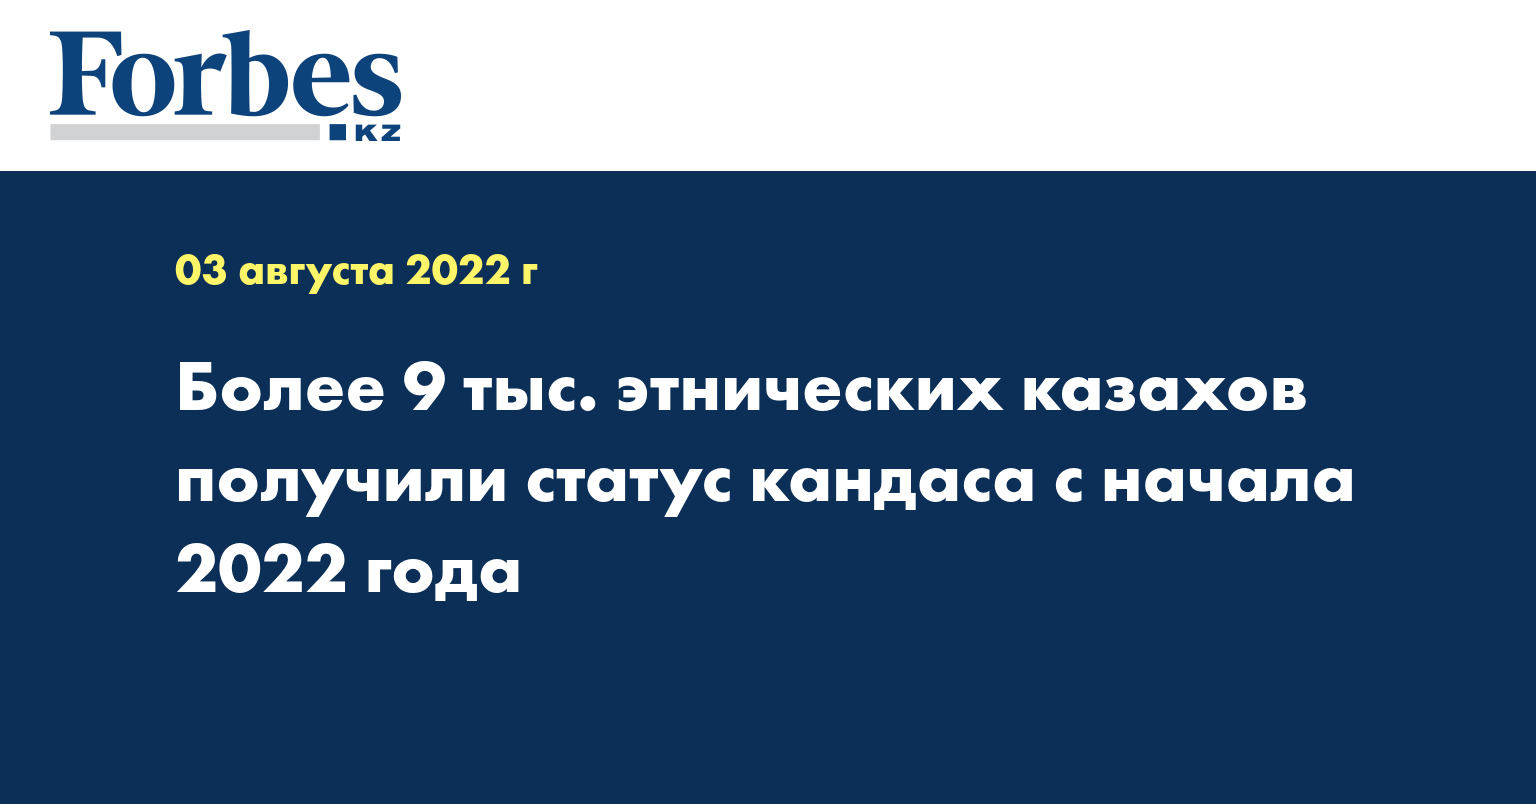 Более 9 тыс. этнических казахов получили статус кандаса с начала 2022 года